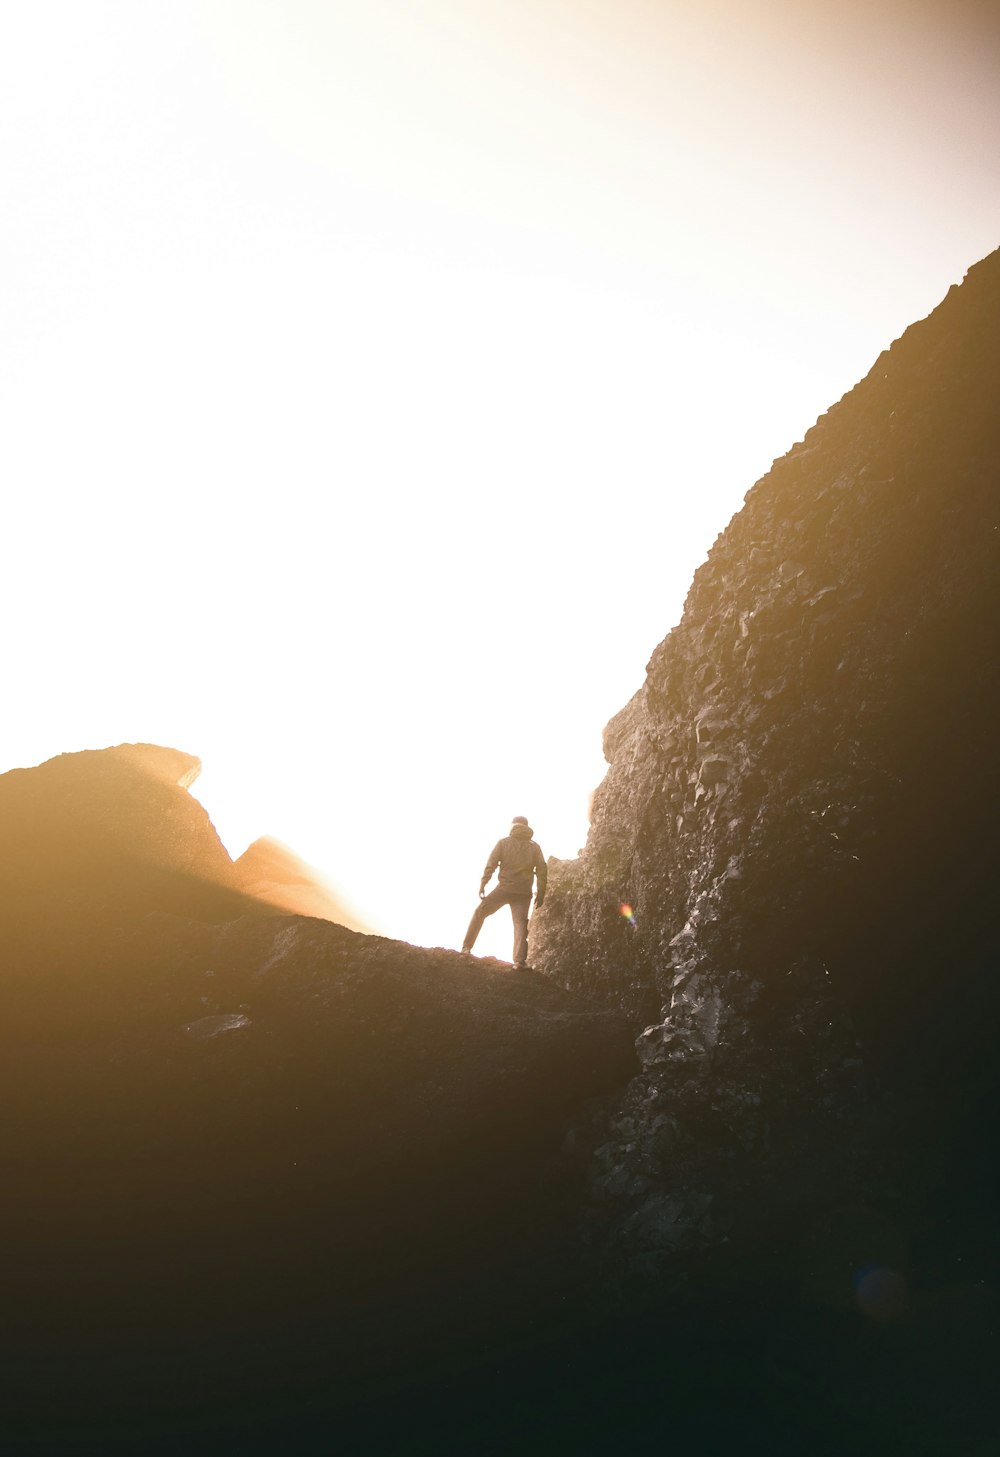 Fotografia della silhouette dell'uomo in piedi sulla montagna